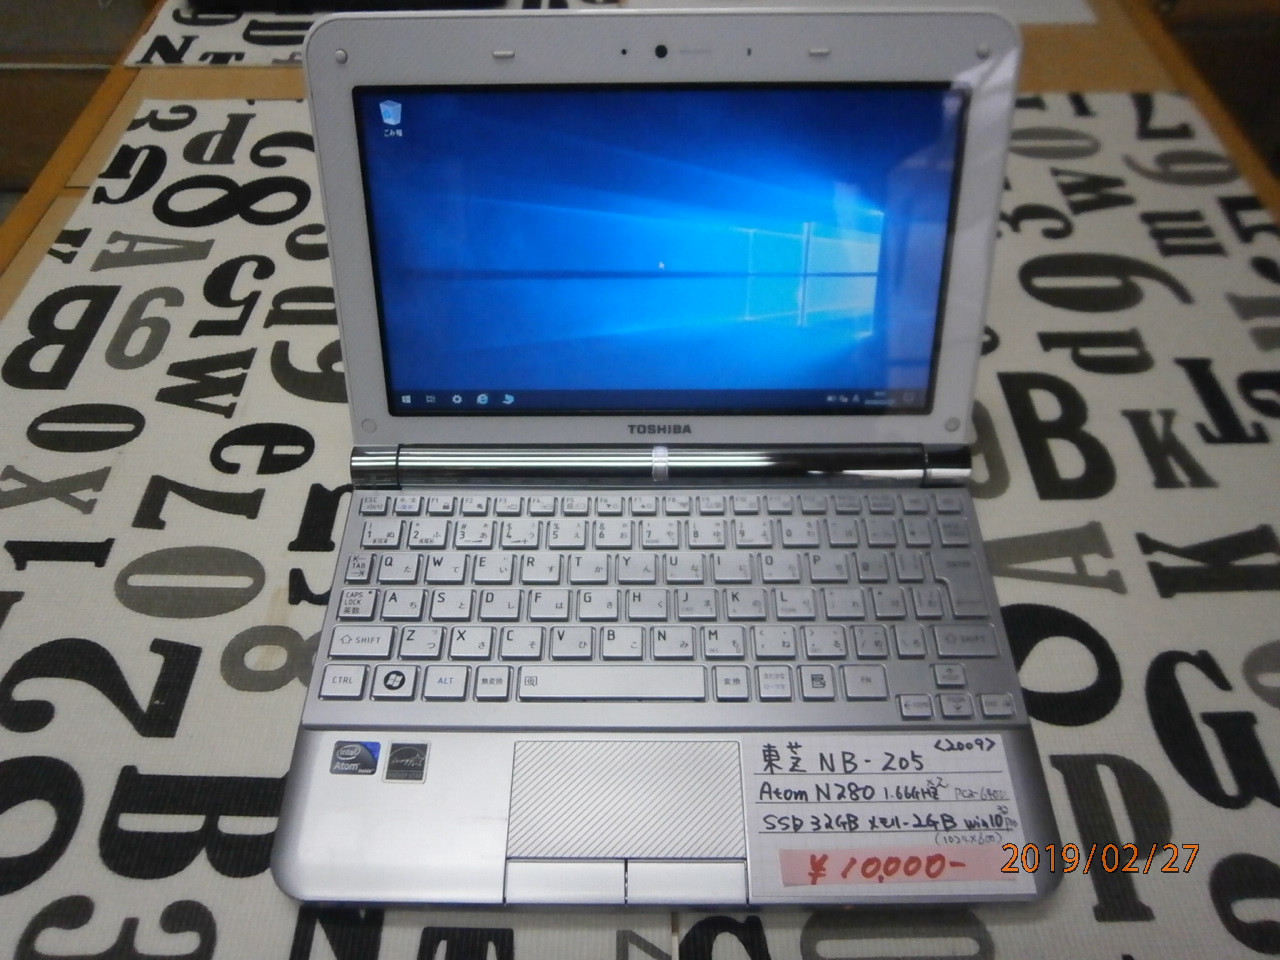 dynabook NB-205 AtomN280 1.66GHZ×2 メモリー2GB 32GB SSD Windows10 Pro 32bit